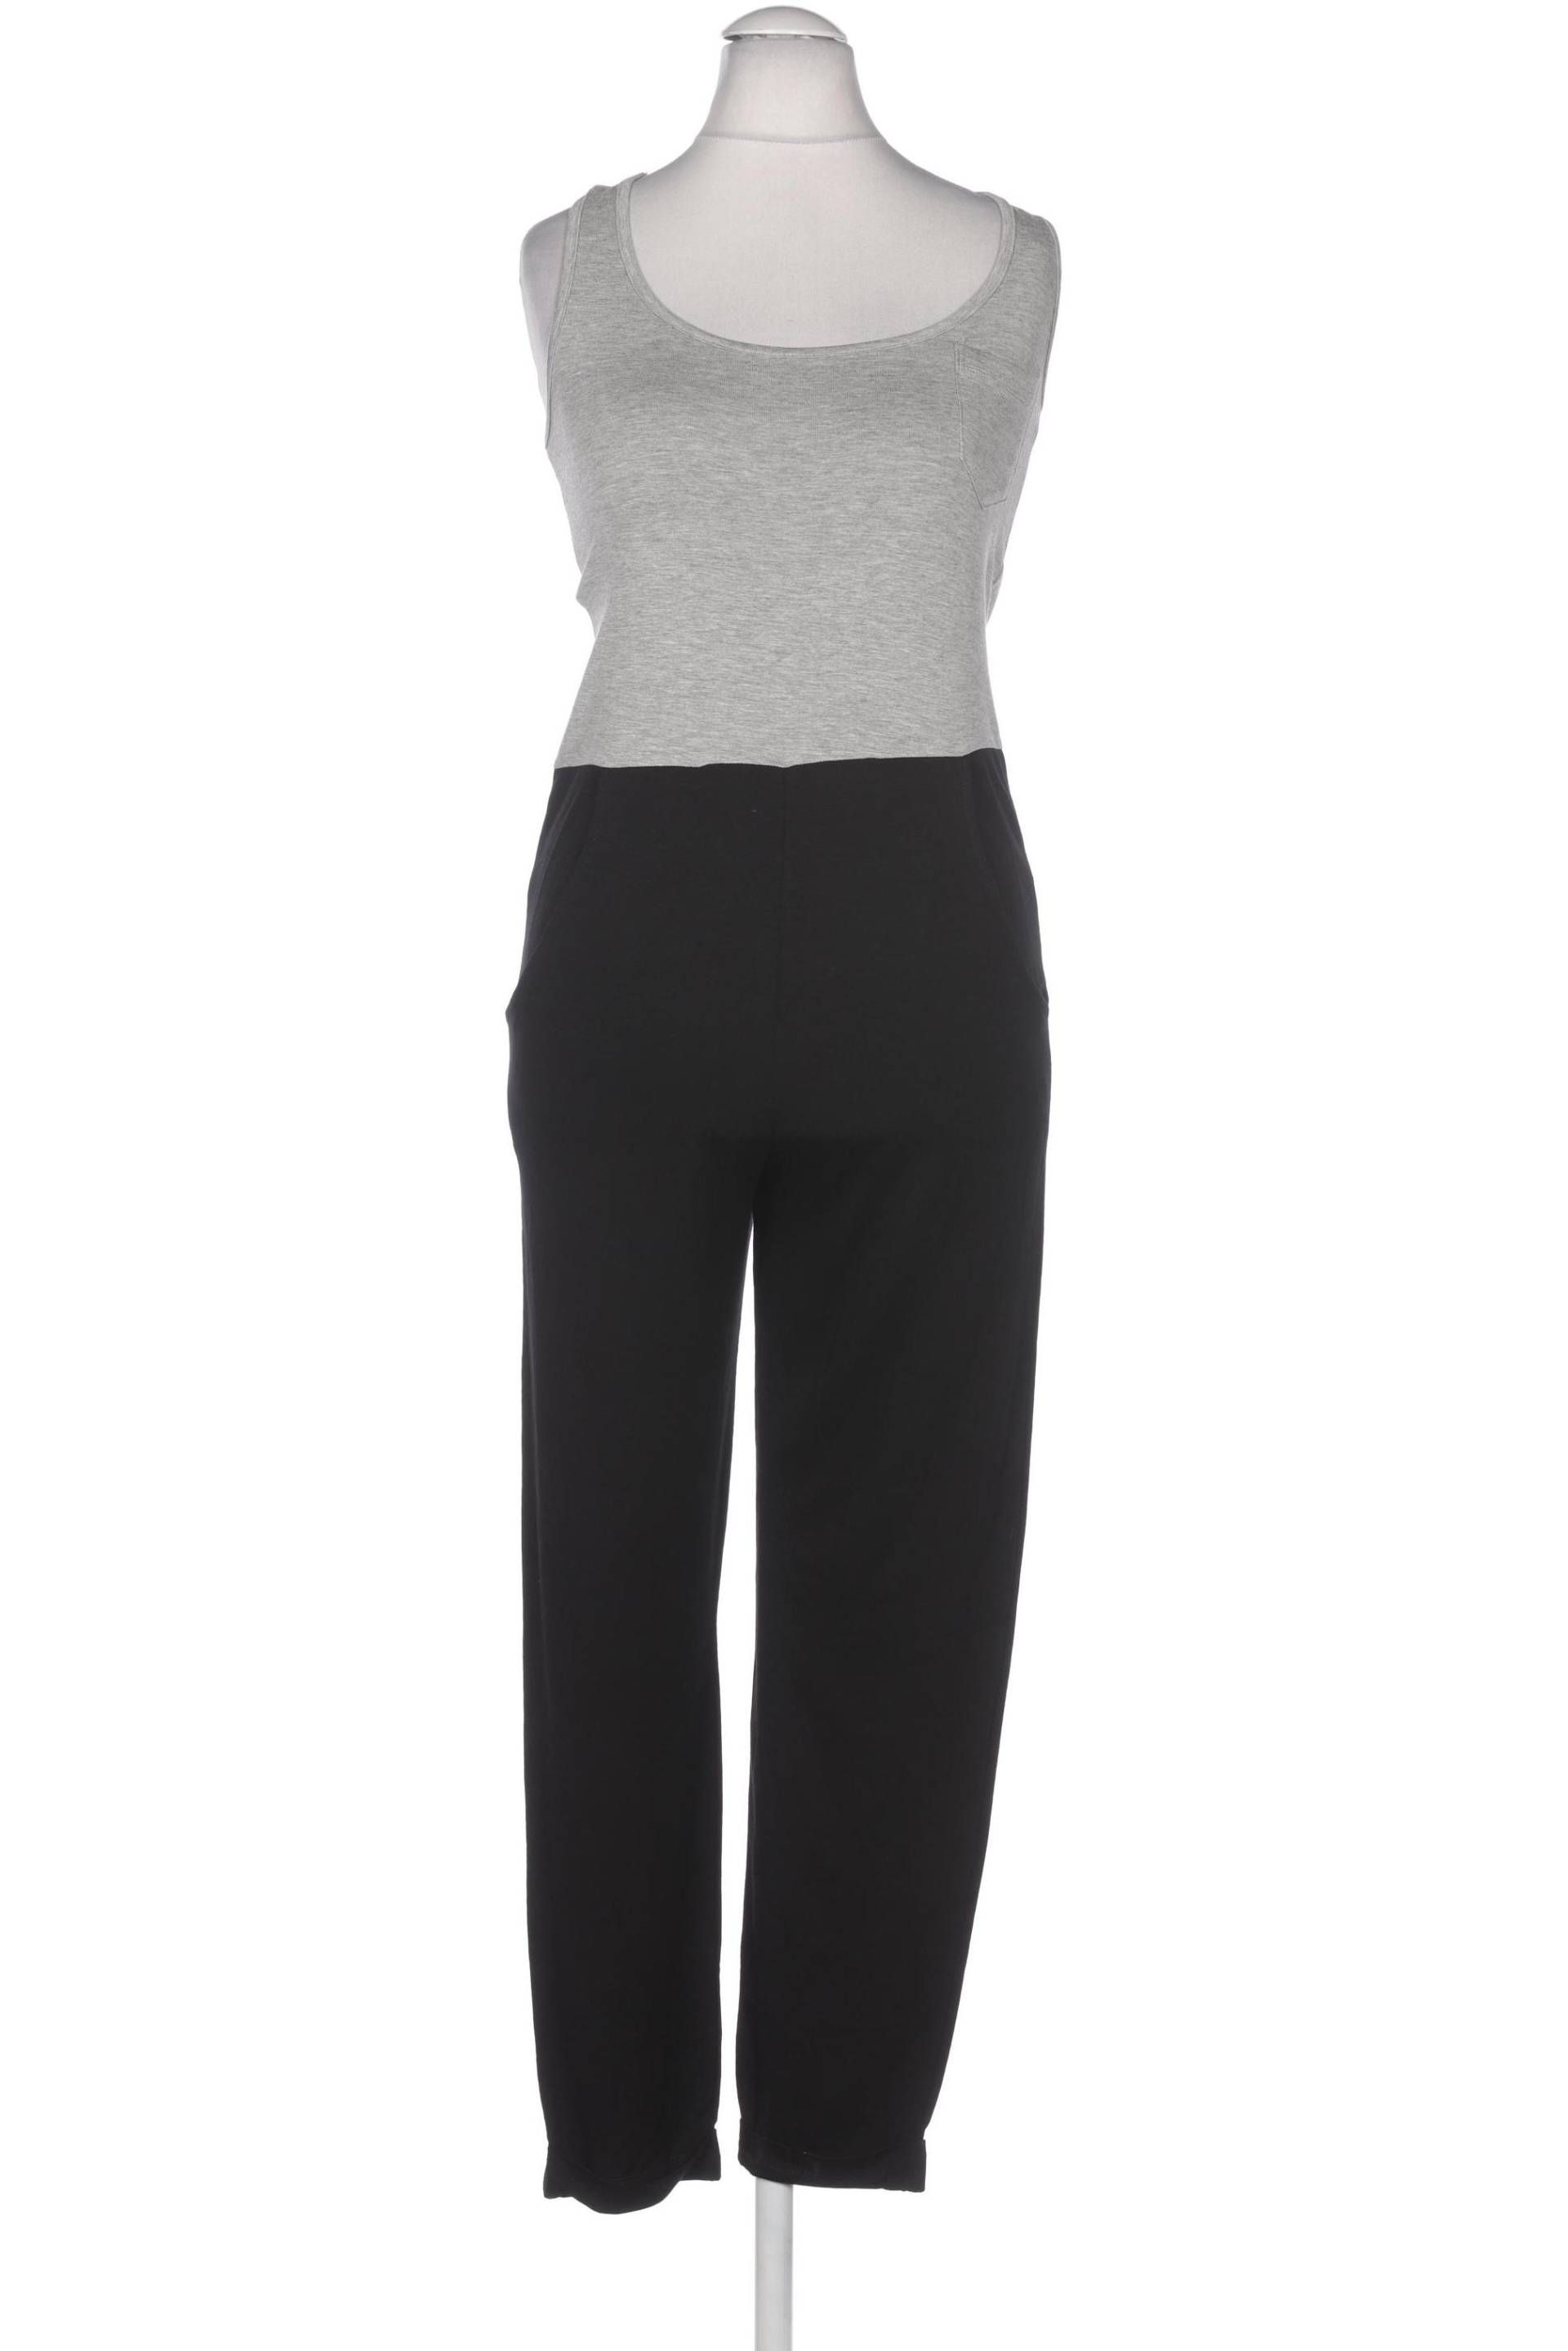 asos Damen Jumpsuit/Overall, schwarz, Gr. 32 von asos